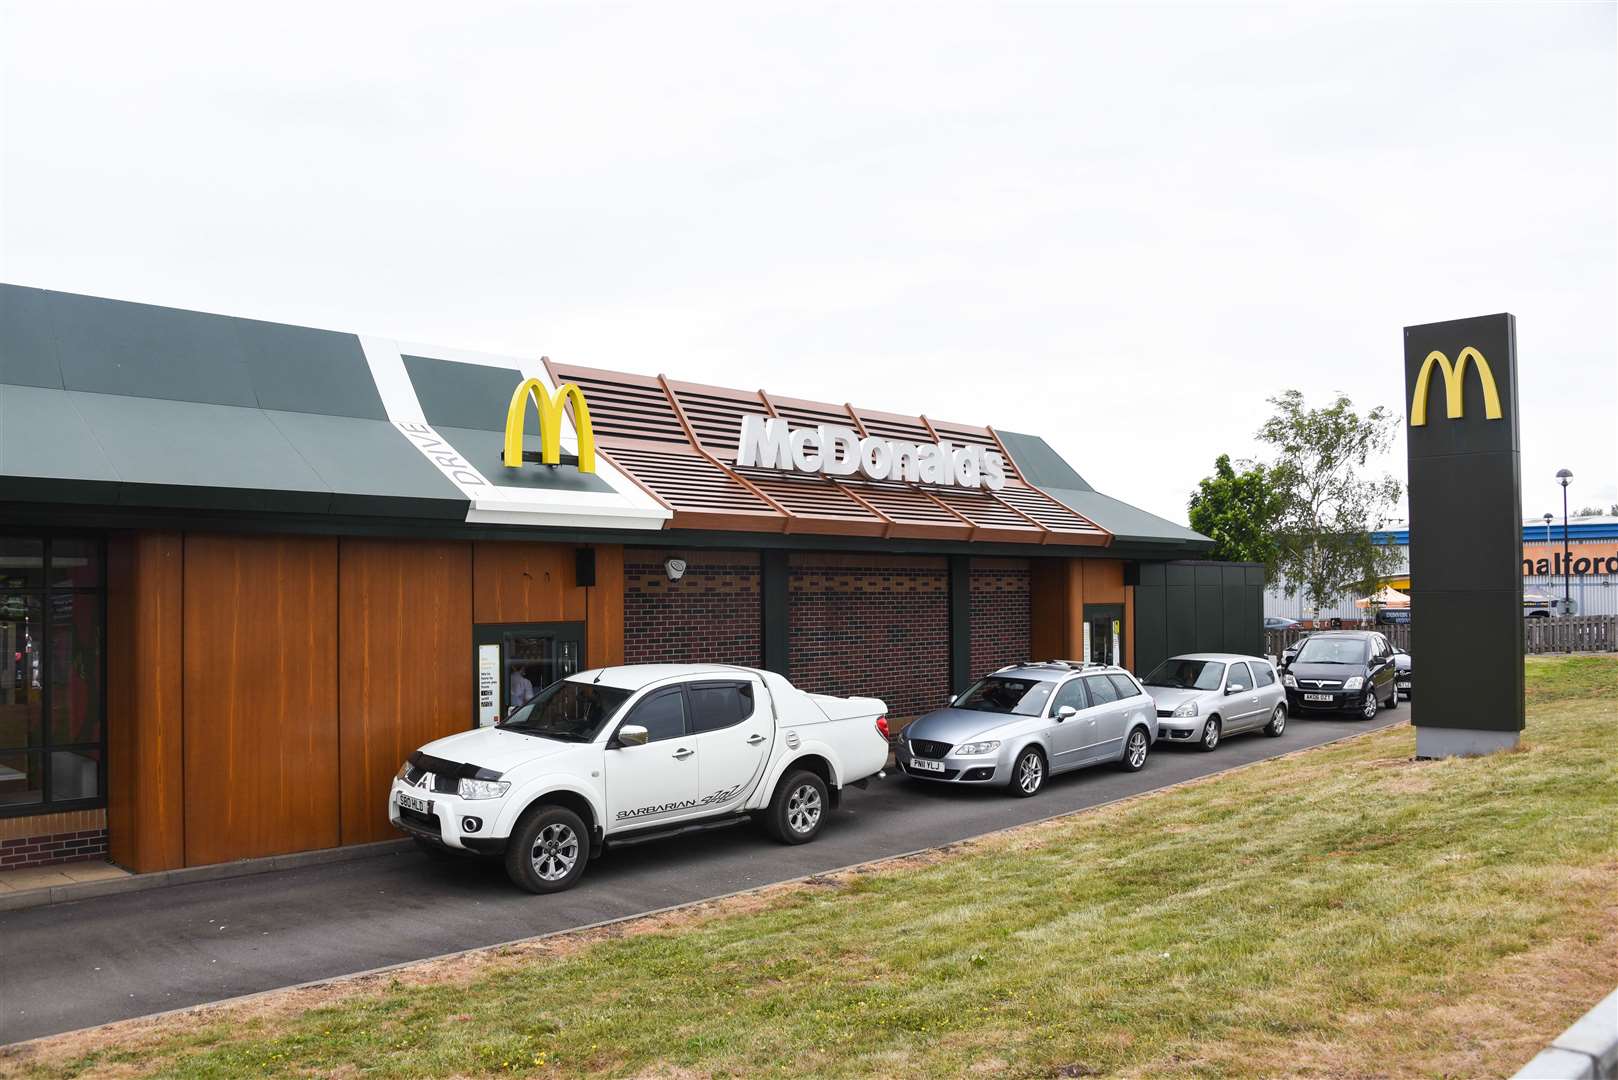 A McDonald's drive-thru. Stock Image